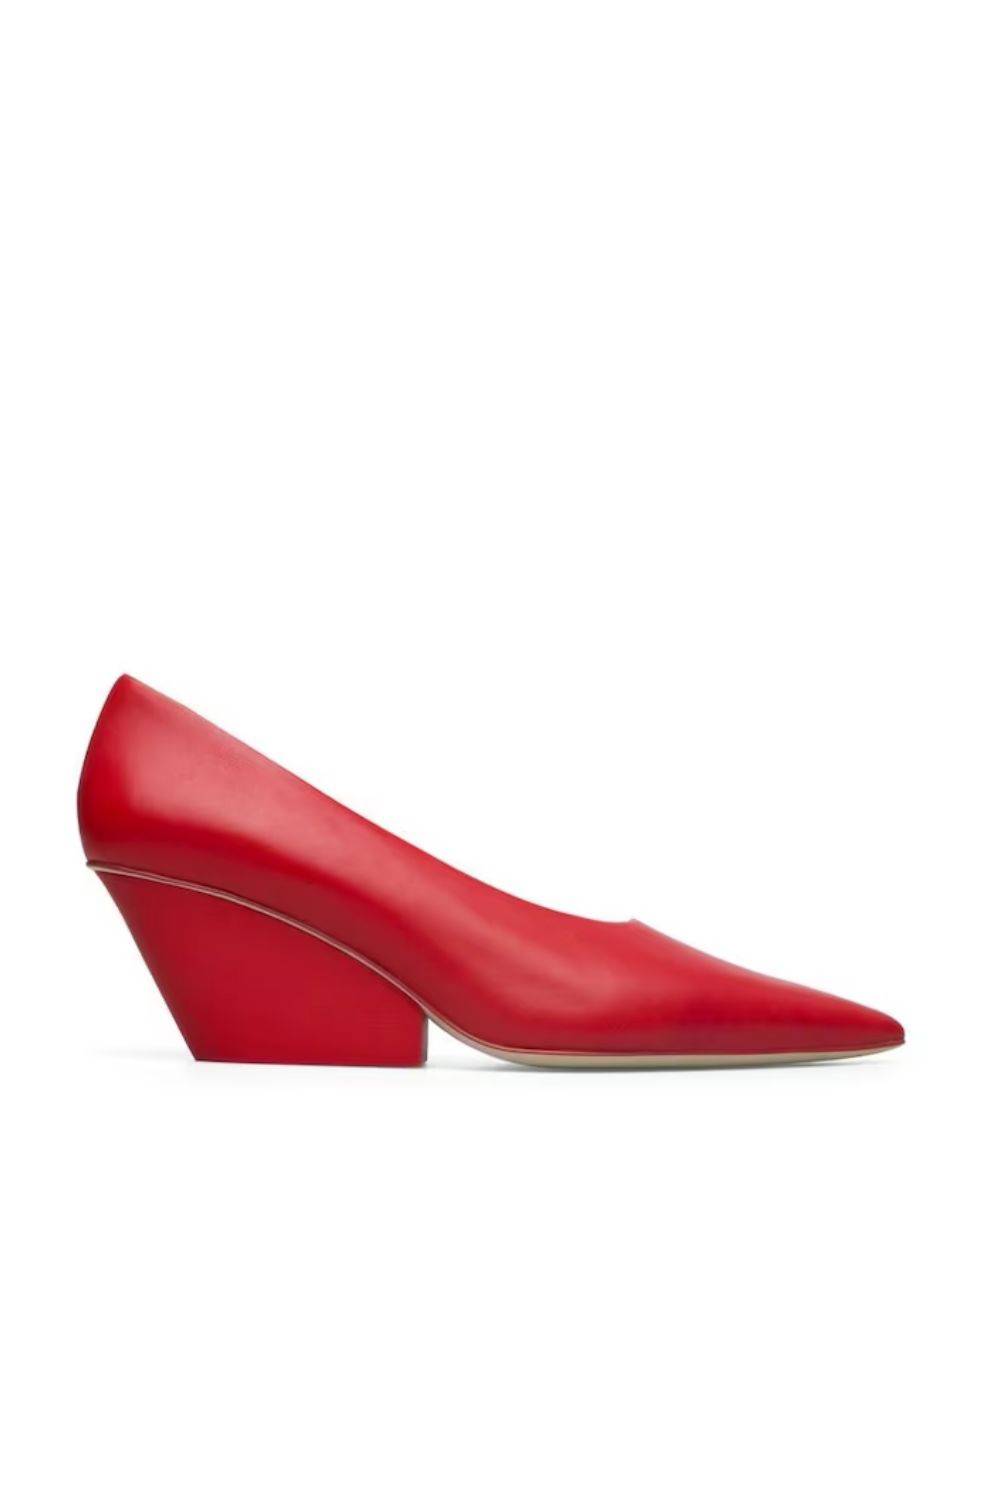 Zapatos de salón de mujer de piel en color rojo